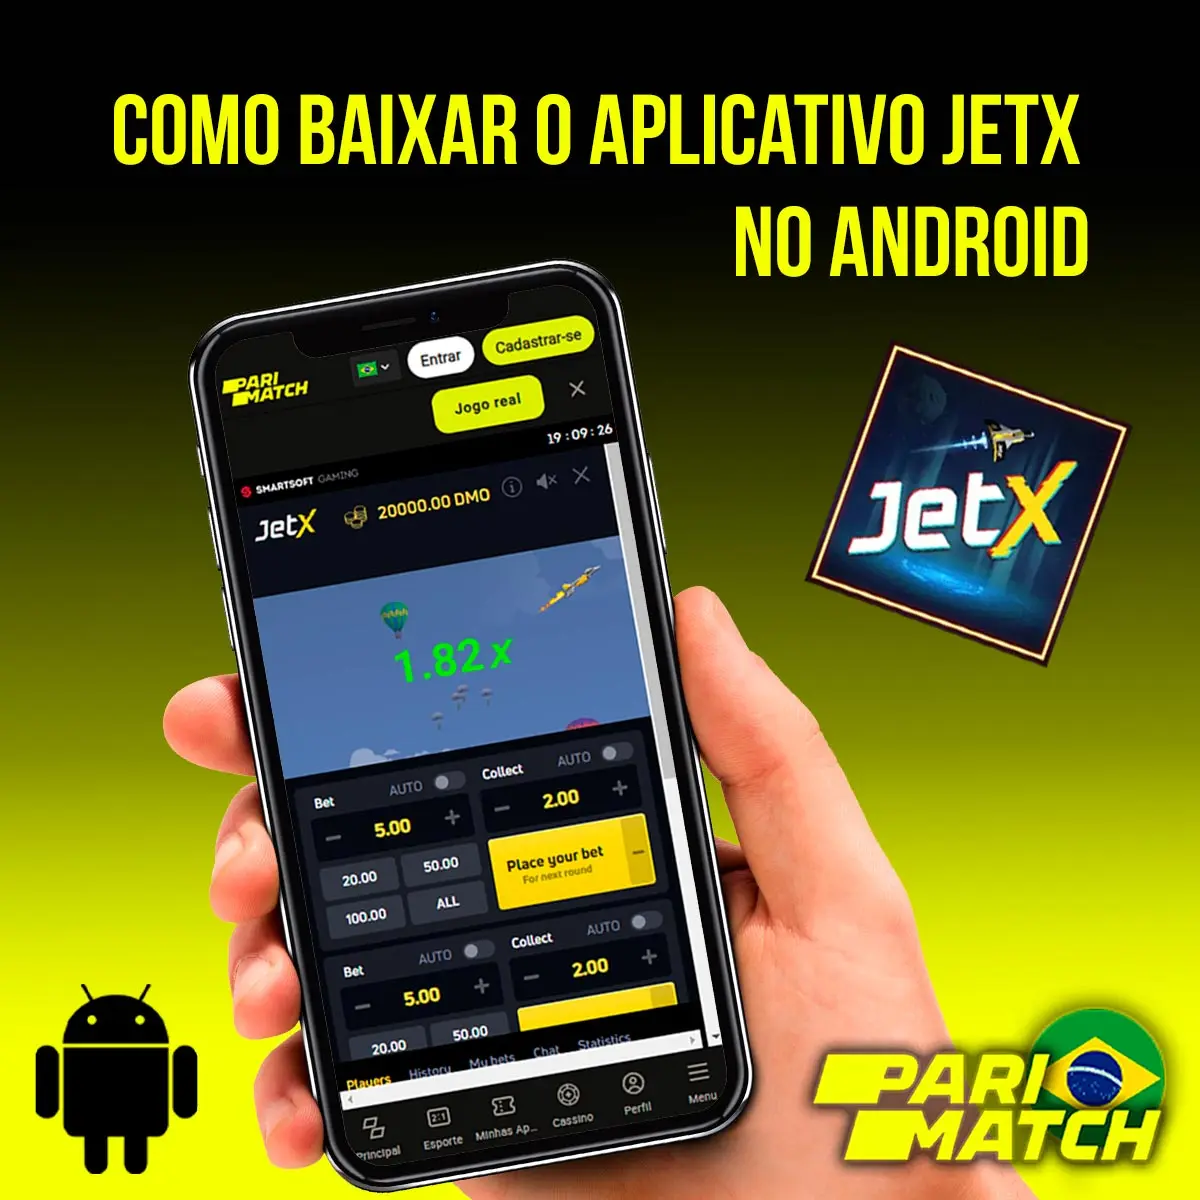 Aplicativo móvel JetX para Android da casa de apostas Parimatch no Brasil